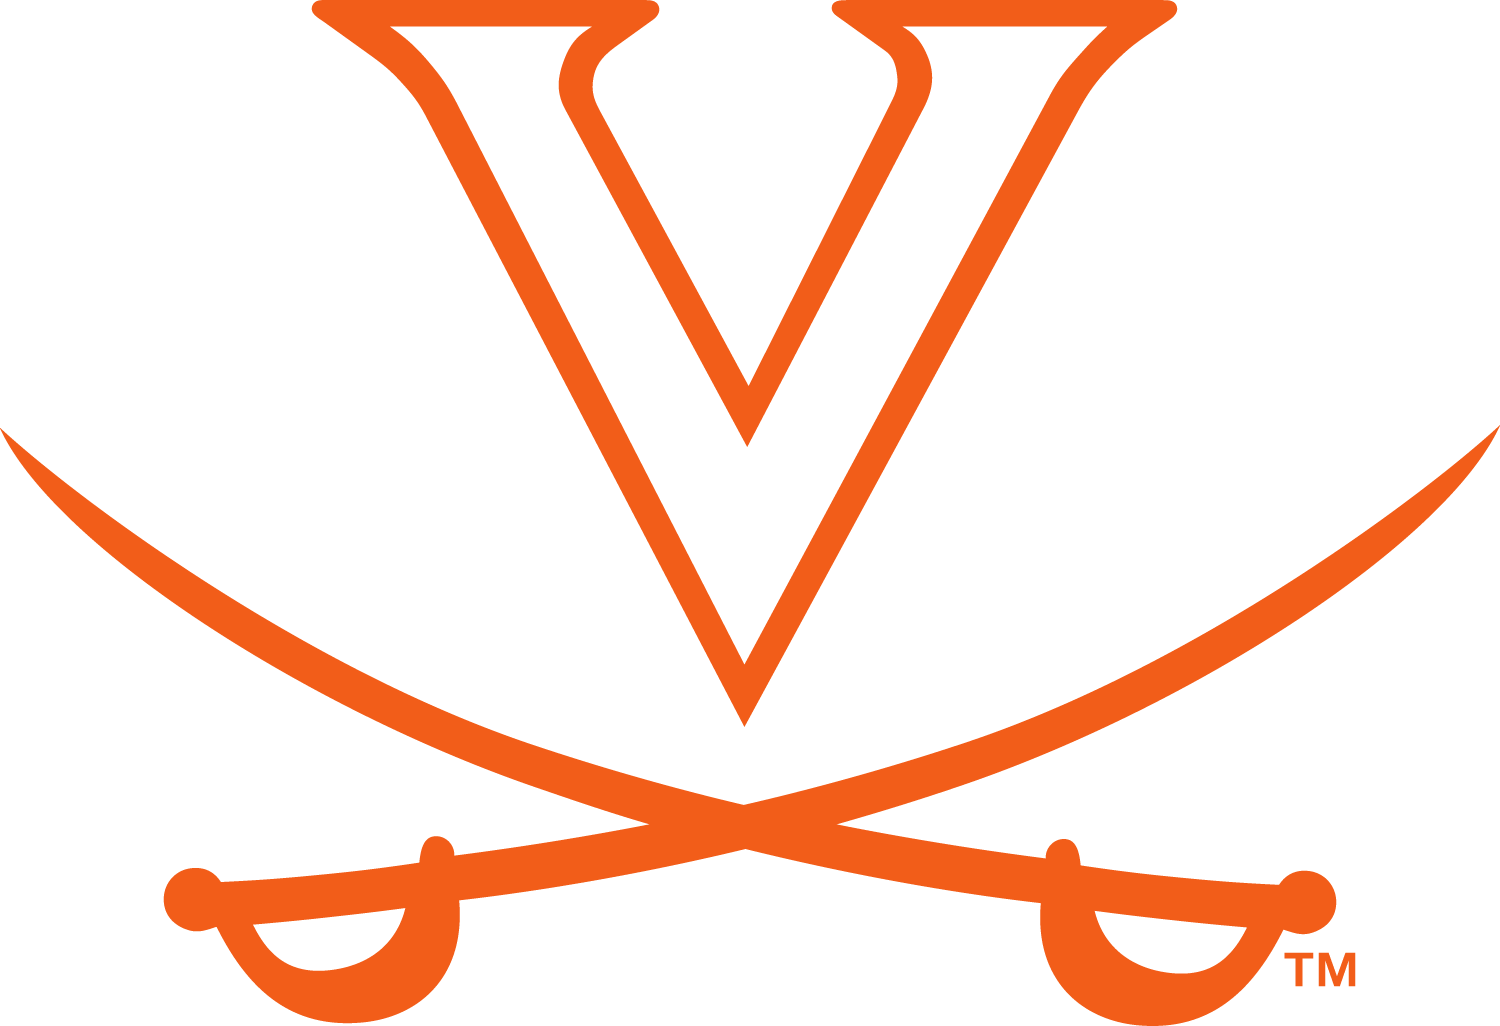 Virginia Cavaliers Logo (VCU) png